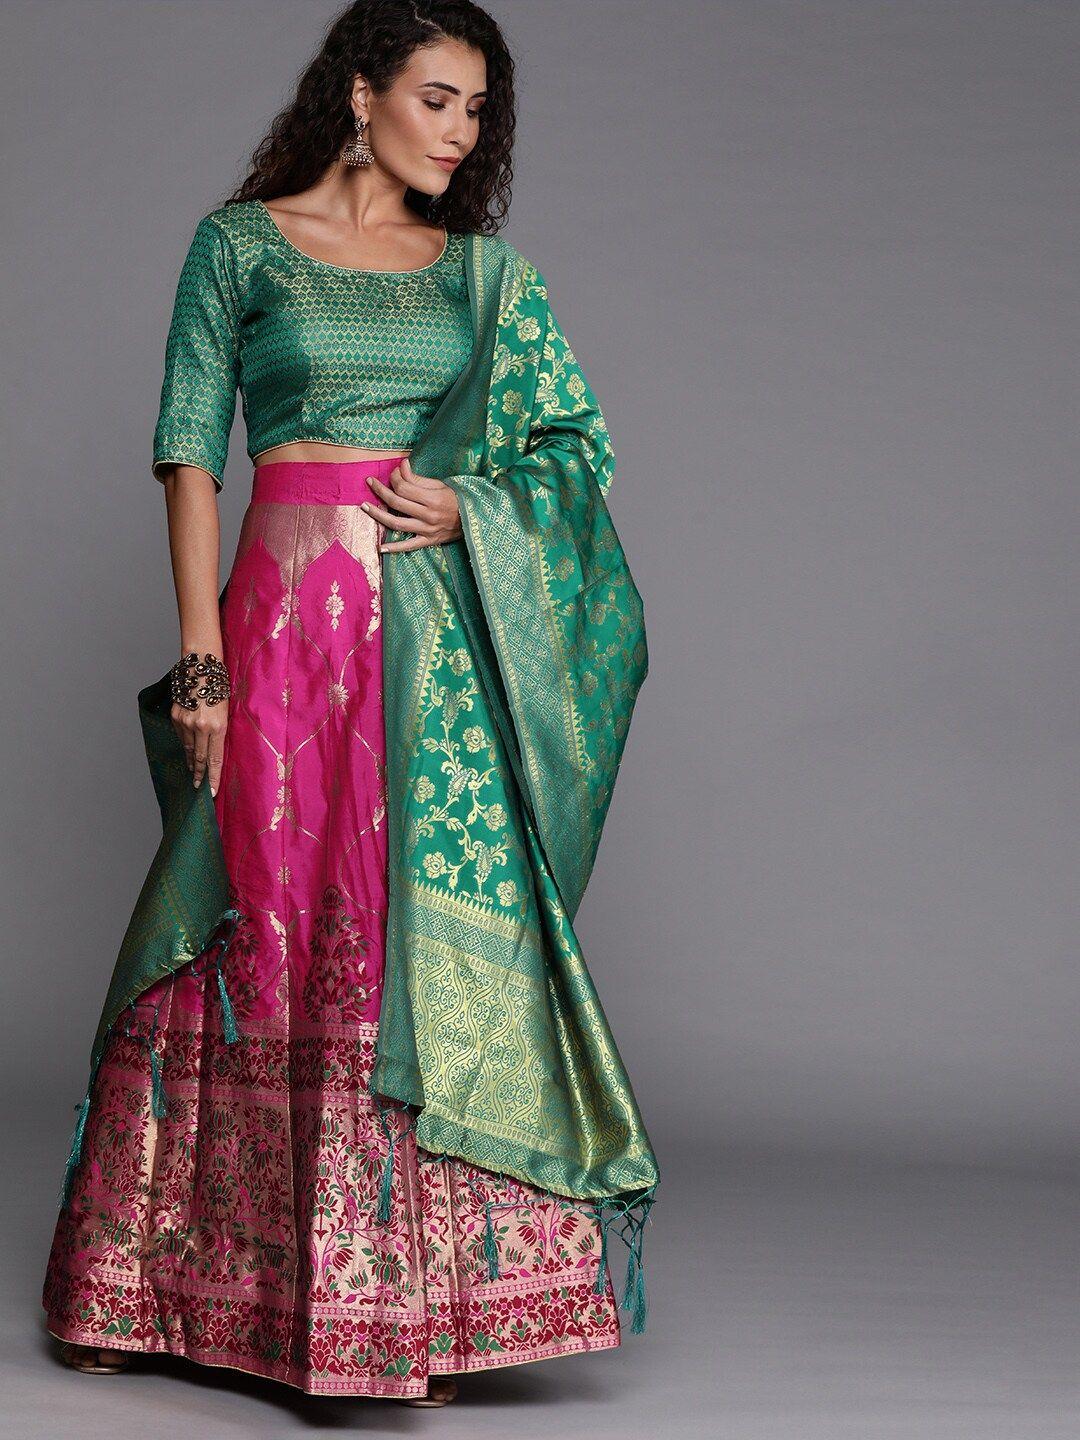 mitera semi-stitched lehenga & unstitched blouse ready to wear with dupatta